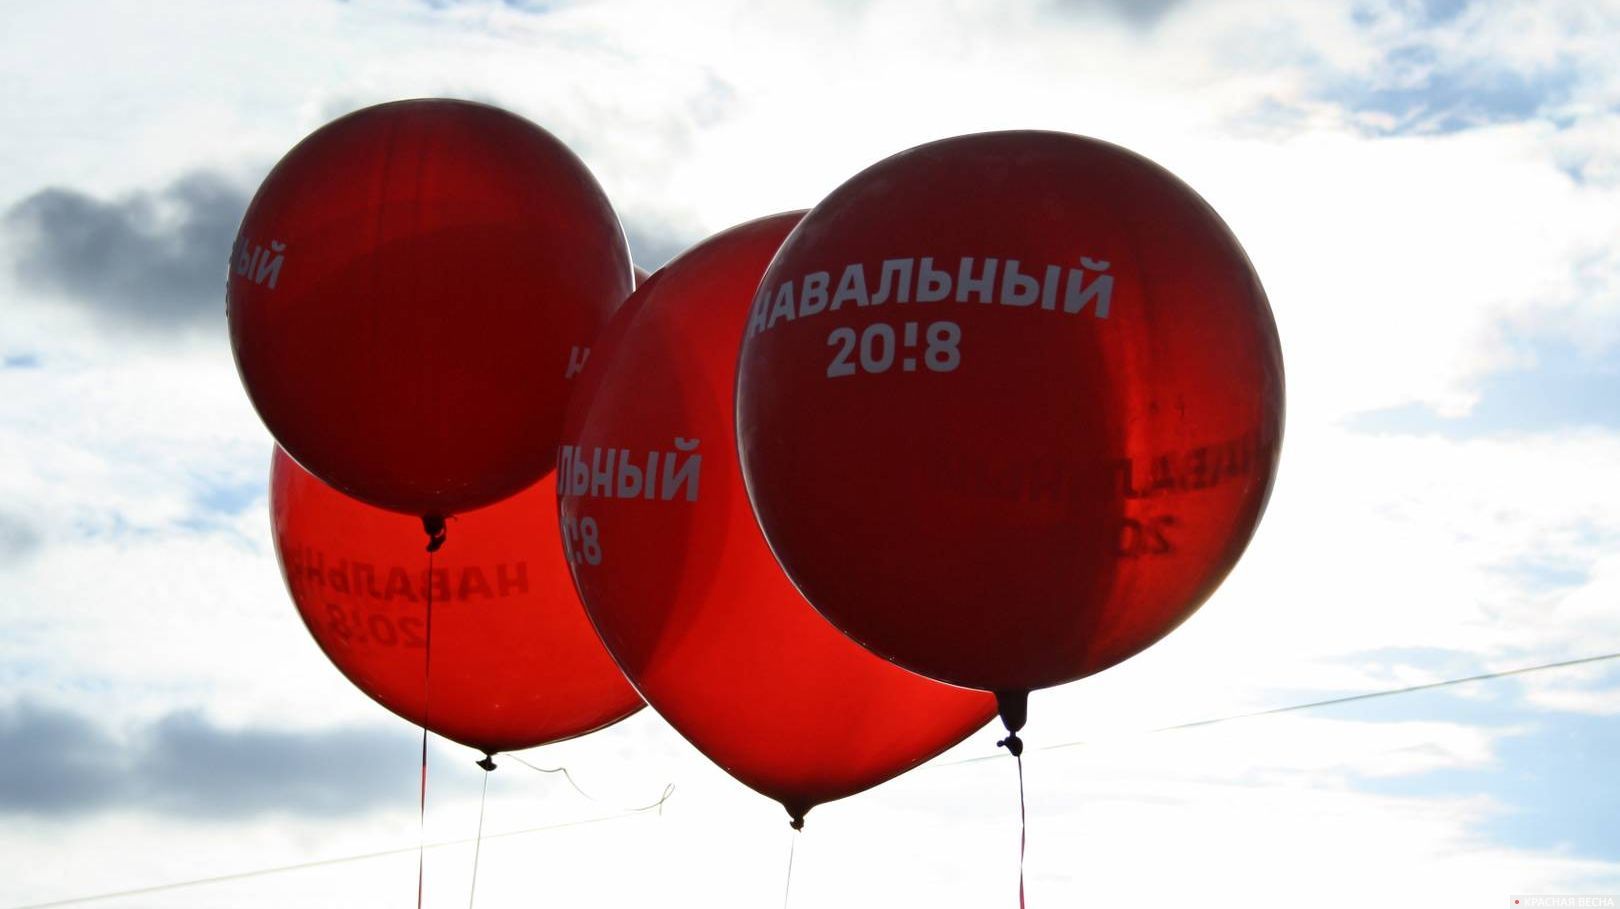 Воздушные шары с надписью «Навальный 20! 8»